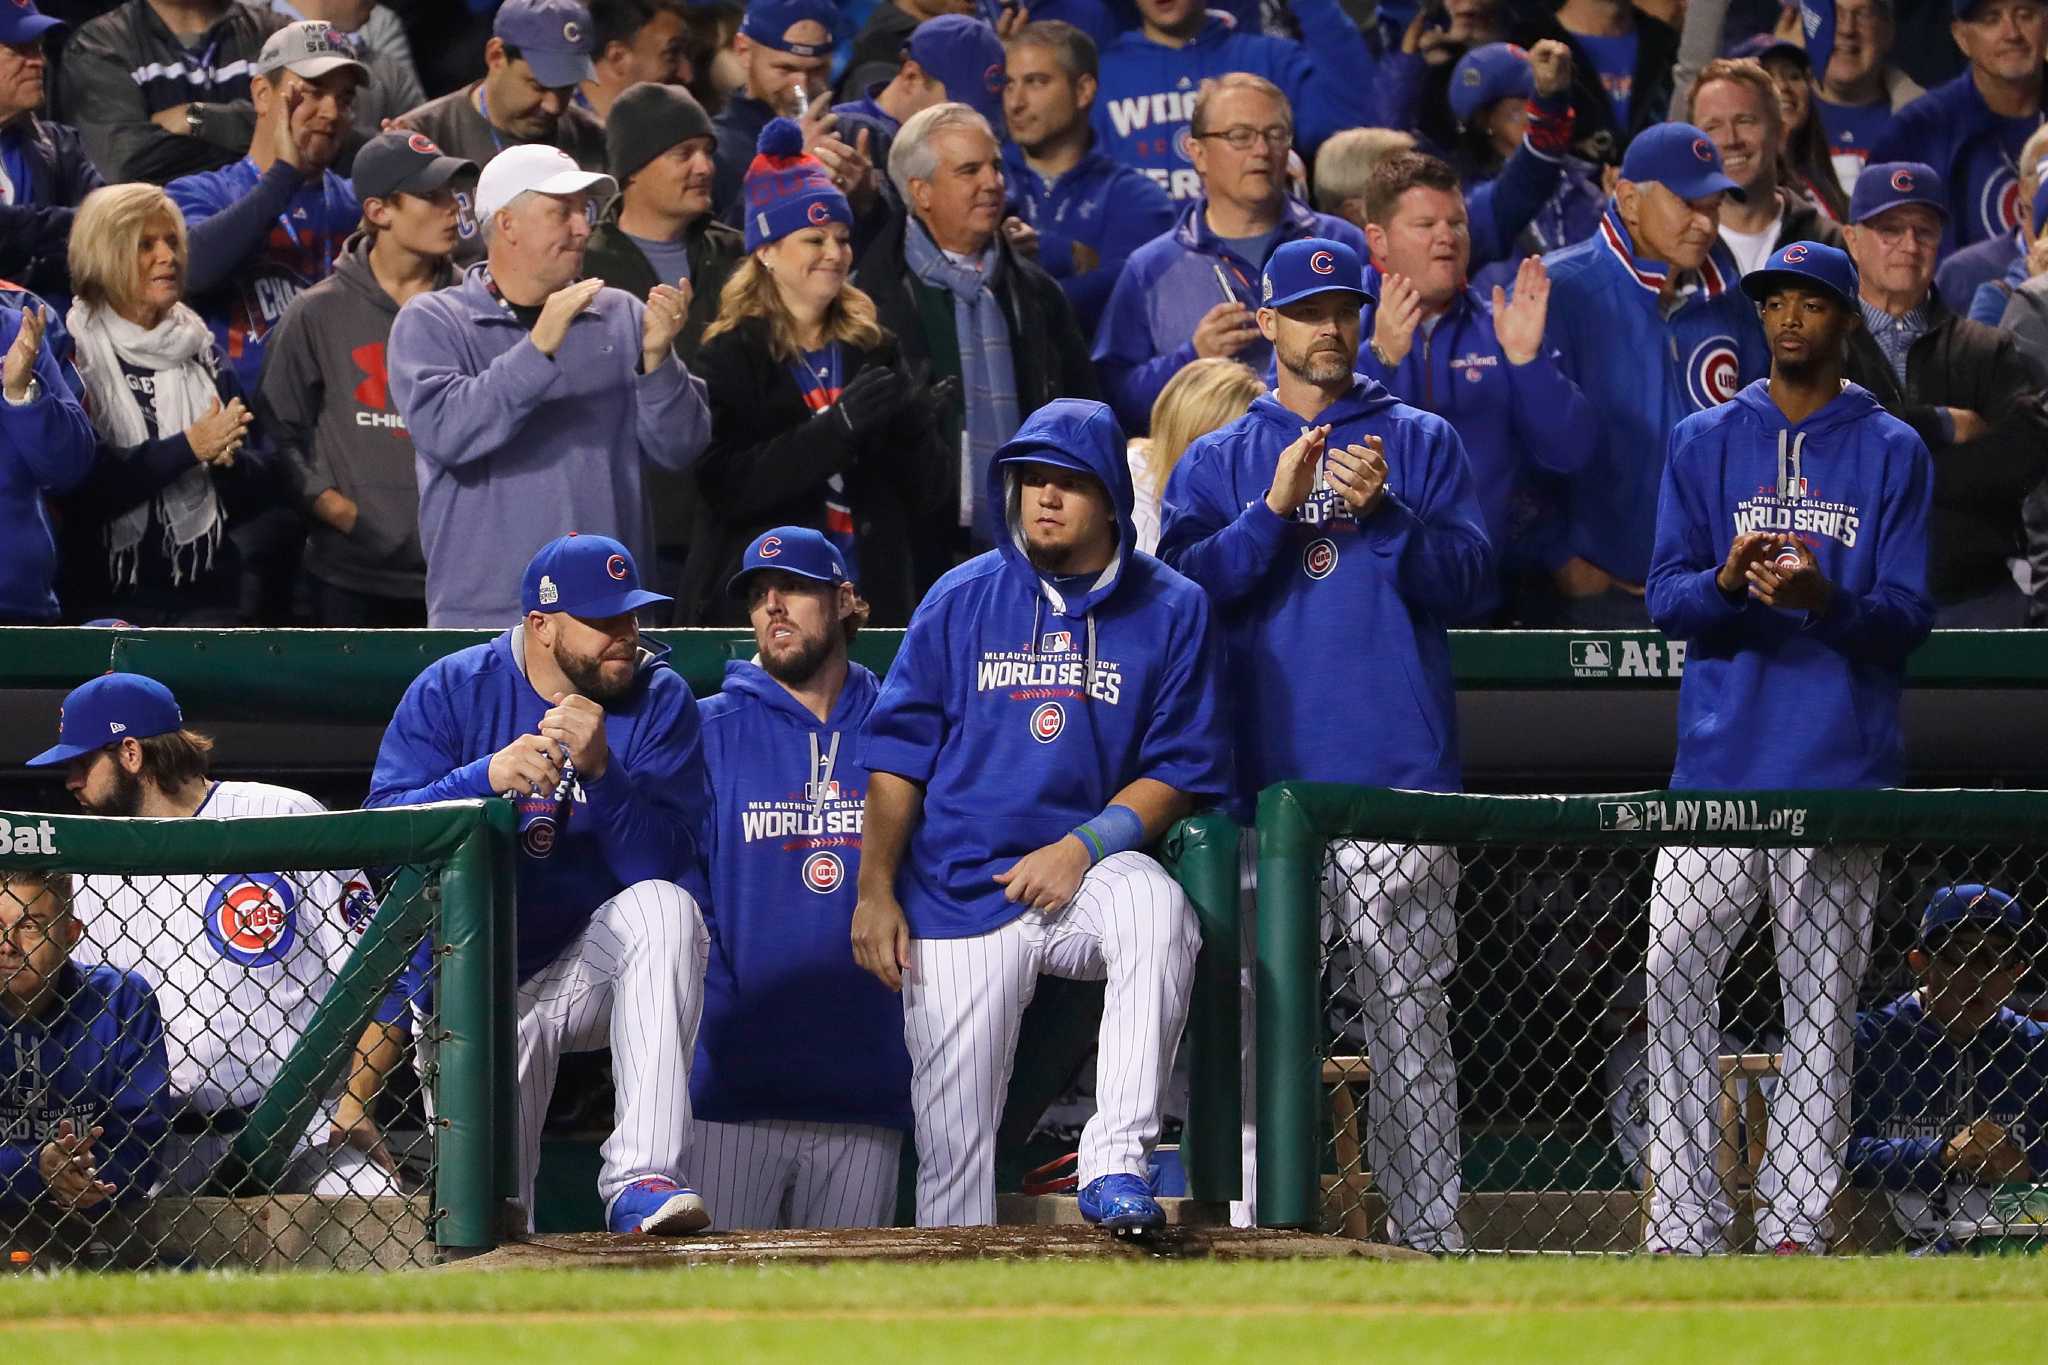 Cubs fan: This feels like dead ball era